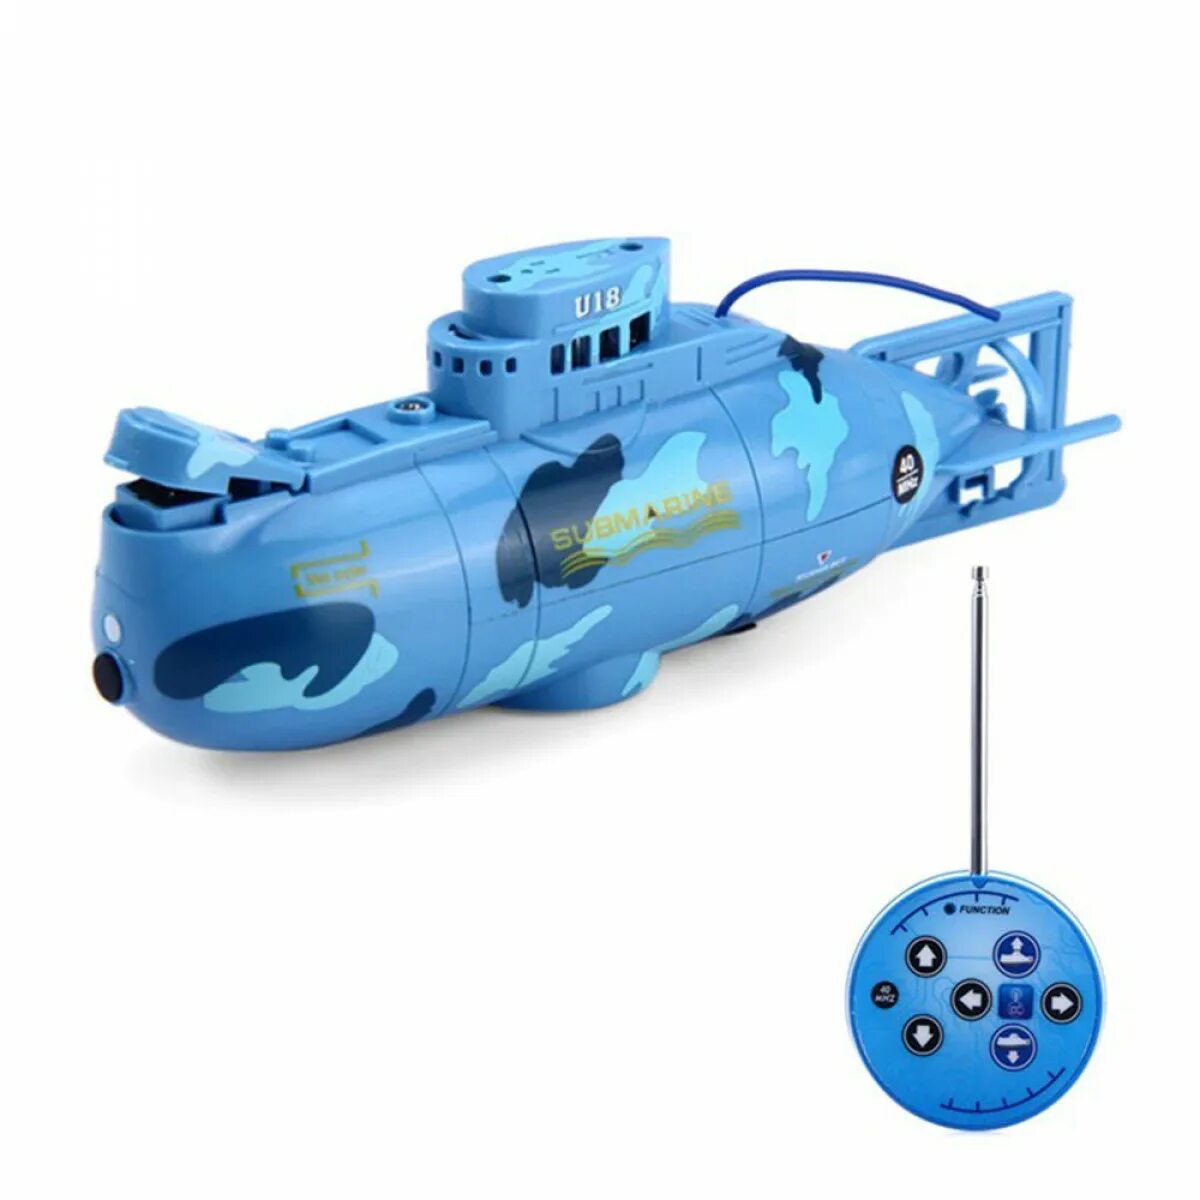 Подводная камера на радиоуправлении. Радиоуправляемая подводная лодка create Toys Mini Submarine 3311. Радиоуправляемая подводная лодка Green nuclear Submarine 27 MHZ - CT-3311m-Green. RC Submarine 3 радиоуправляемая лодка. Подводная лодка р/у Submarine (на аккум.).